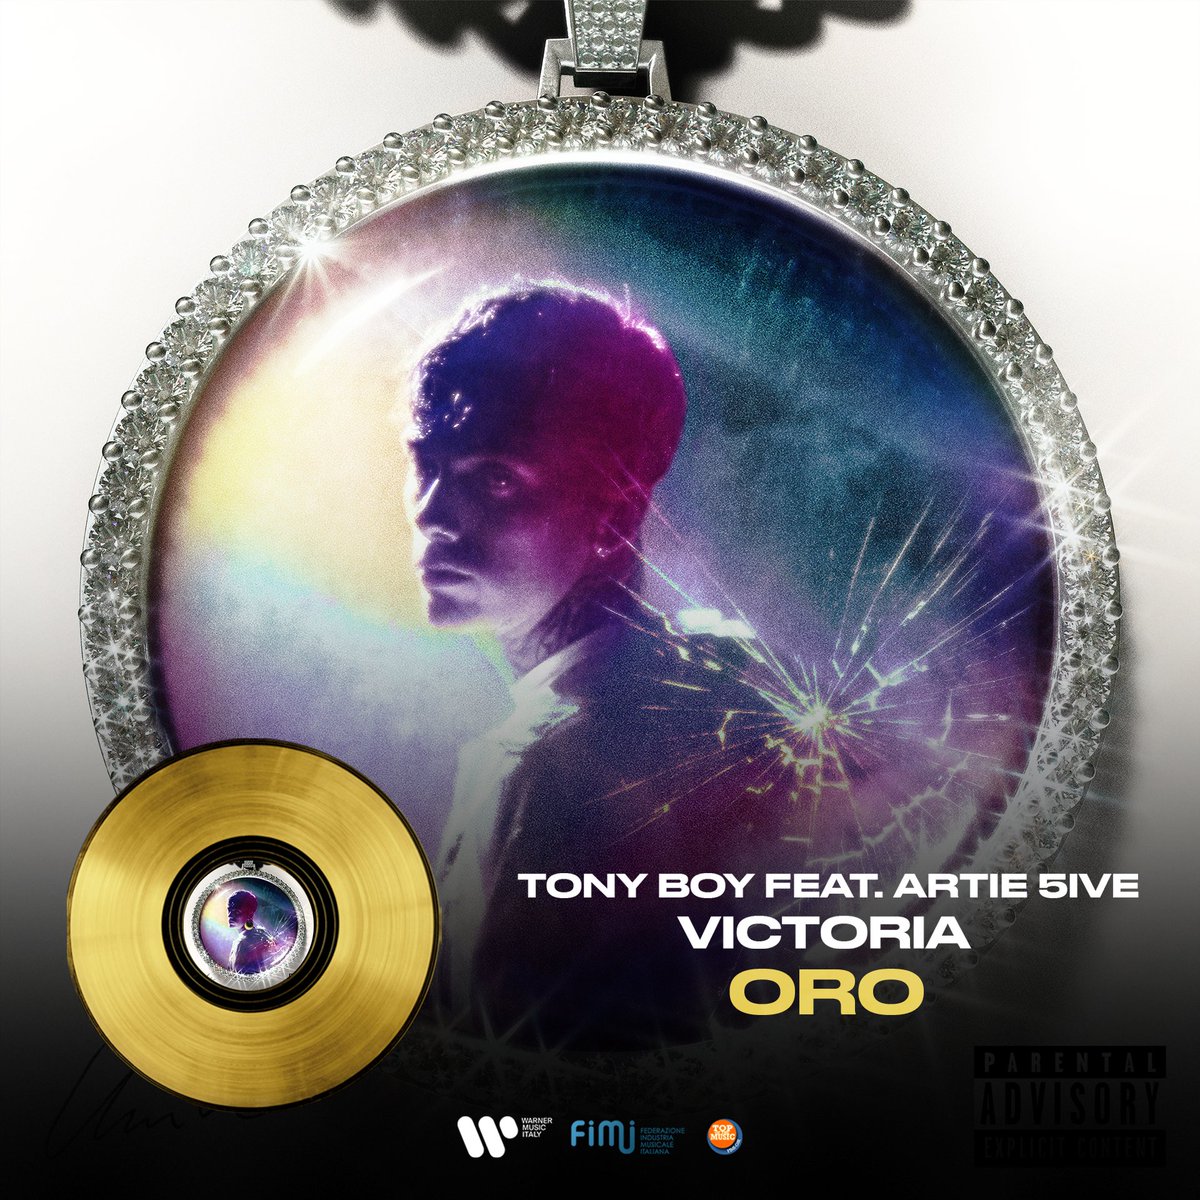 It’s #FimiAwards Time⚡ “Victoria” di Tony Boy feat. Artie 5ive raggiunge il DISCO D'ORO📀 Congratulazioni 👏🏼 @FIMI_IT